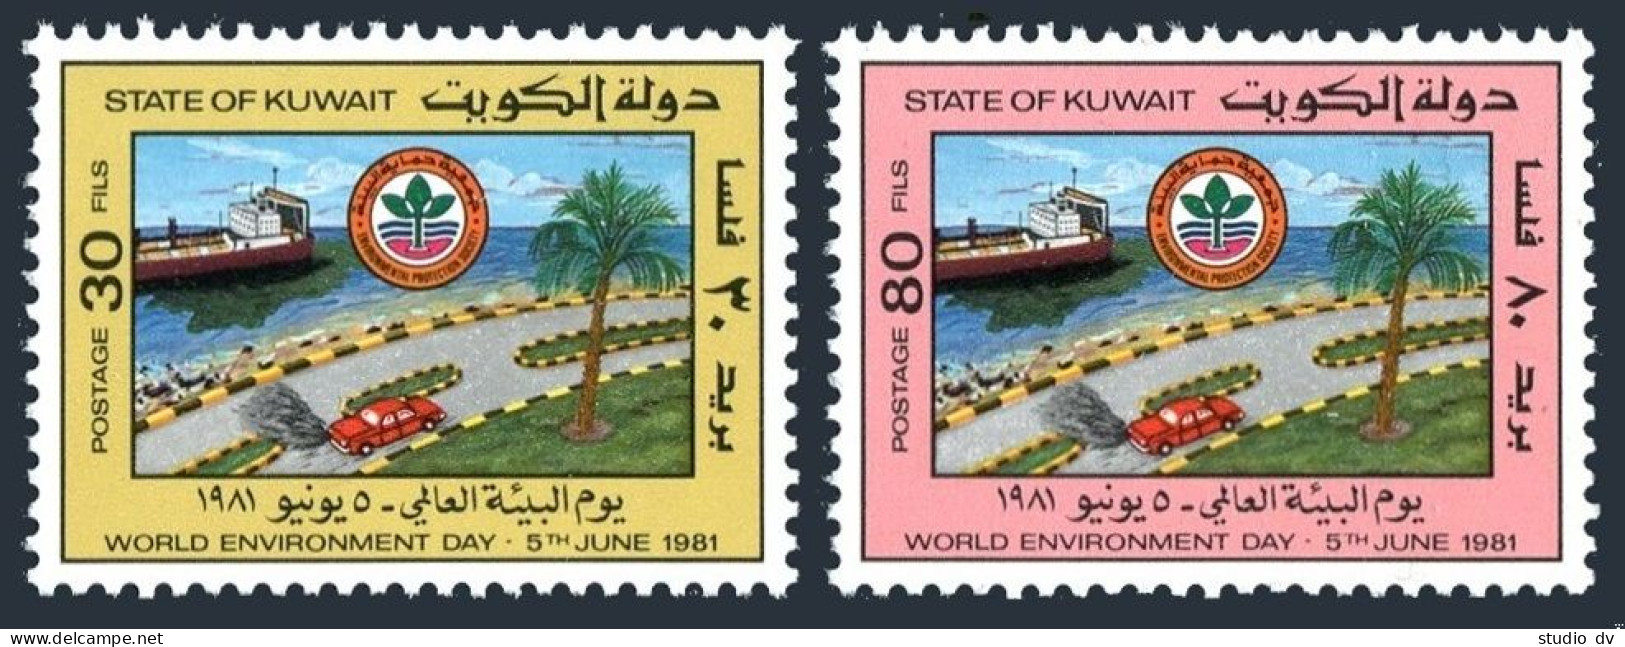 Kuwait 851-852, MNH. Mi 893-894. World Environment Day, 1981. Automobile, Ship. - Koeweit